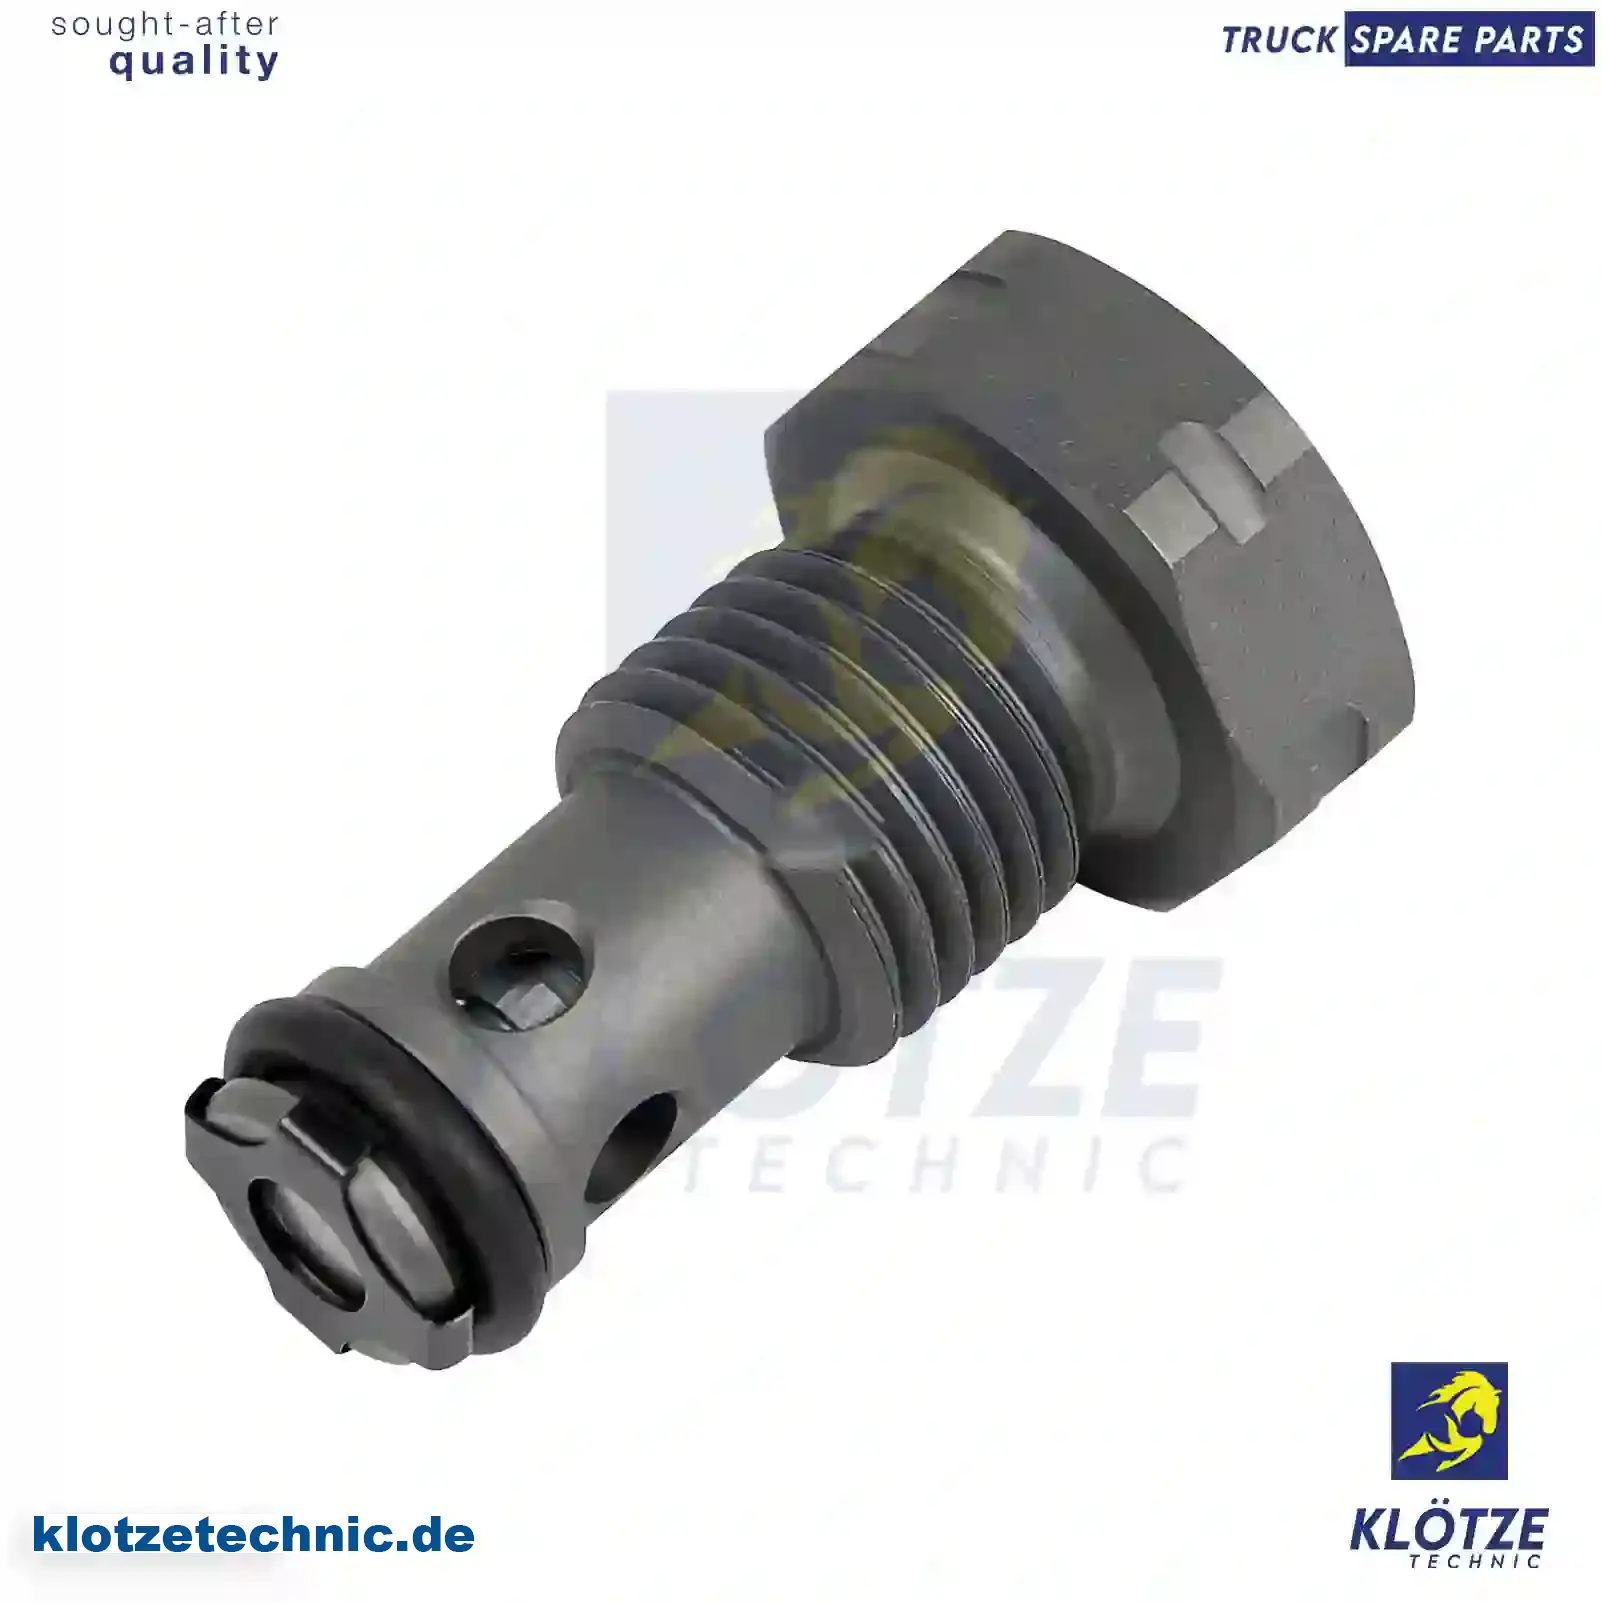 Overflow valve, 51111070029 || Klötze Technic